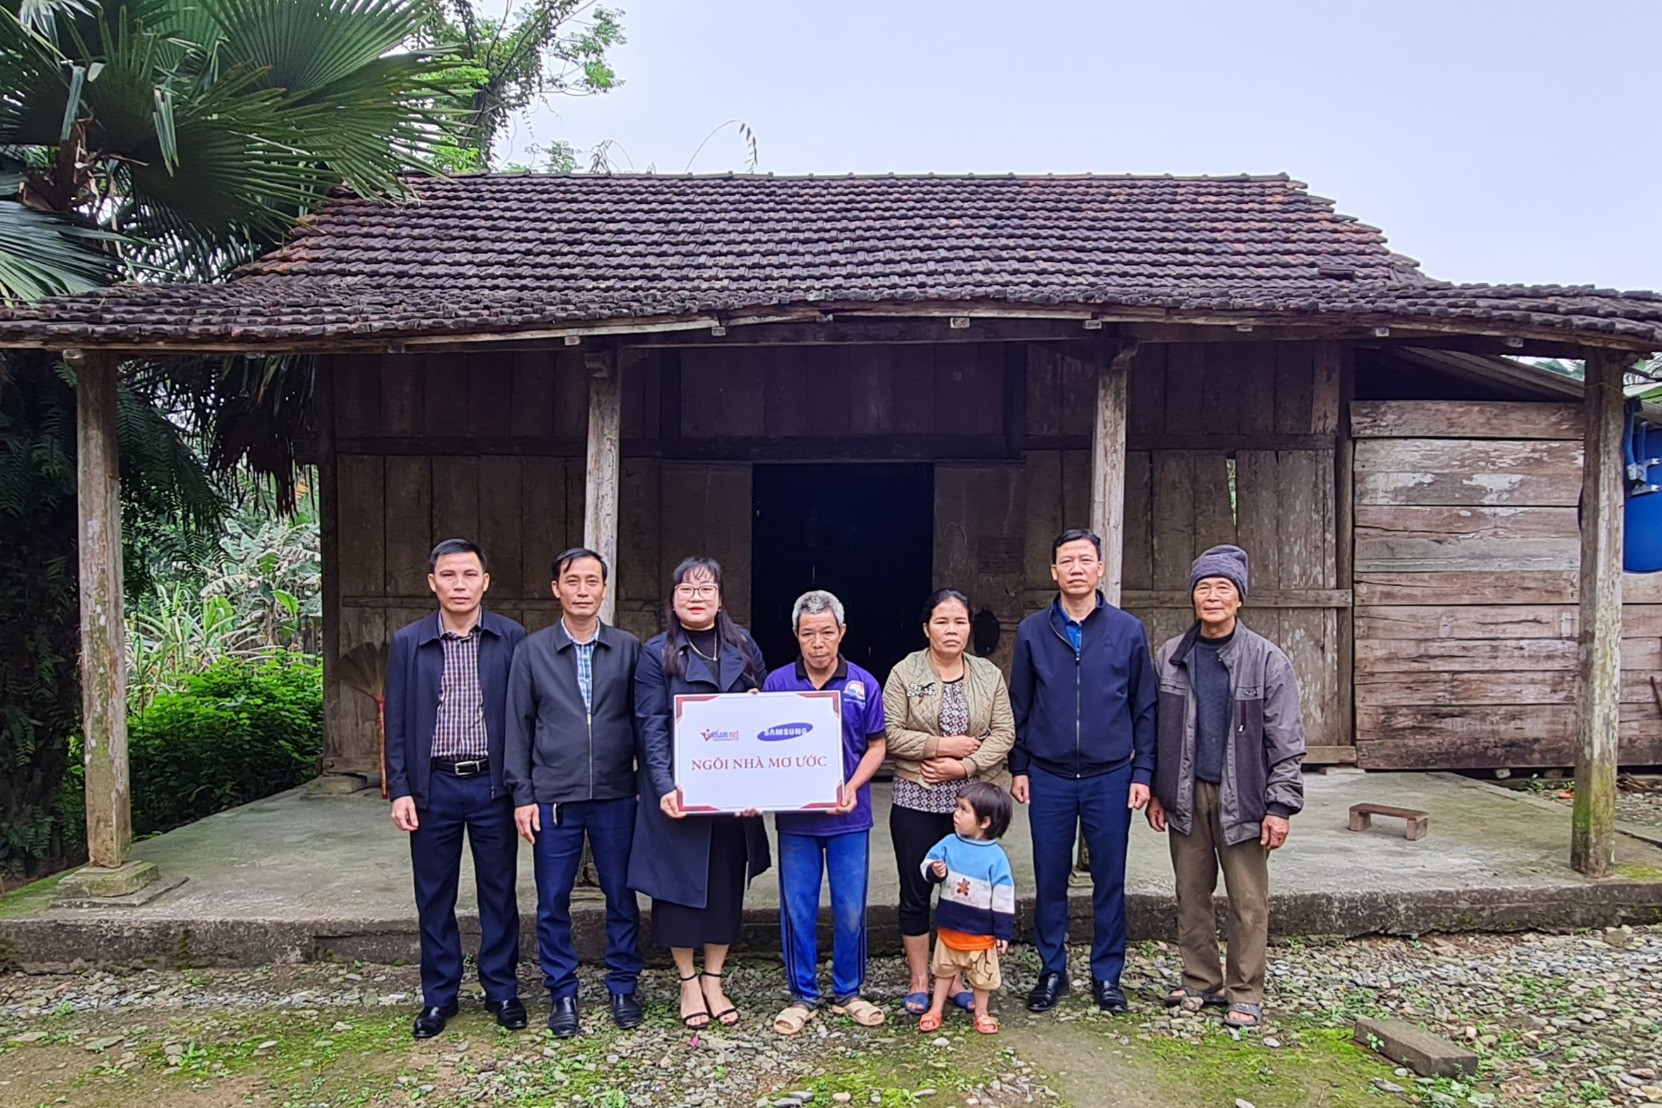 Trao tặng Ngôi nhà mơ ước cho gia đình nghèo ở Quảng Bình